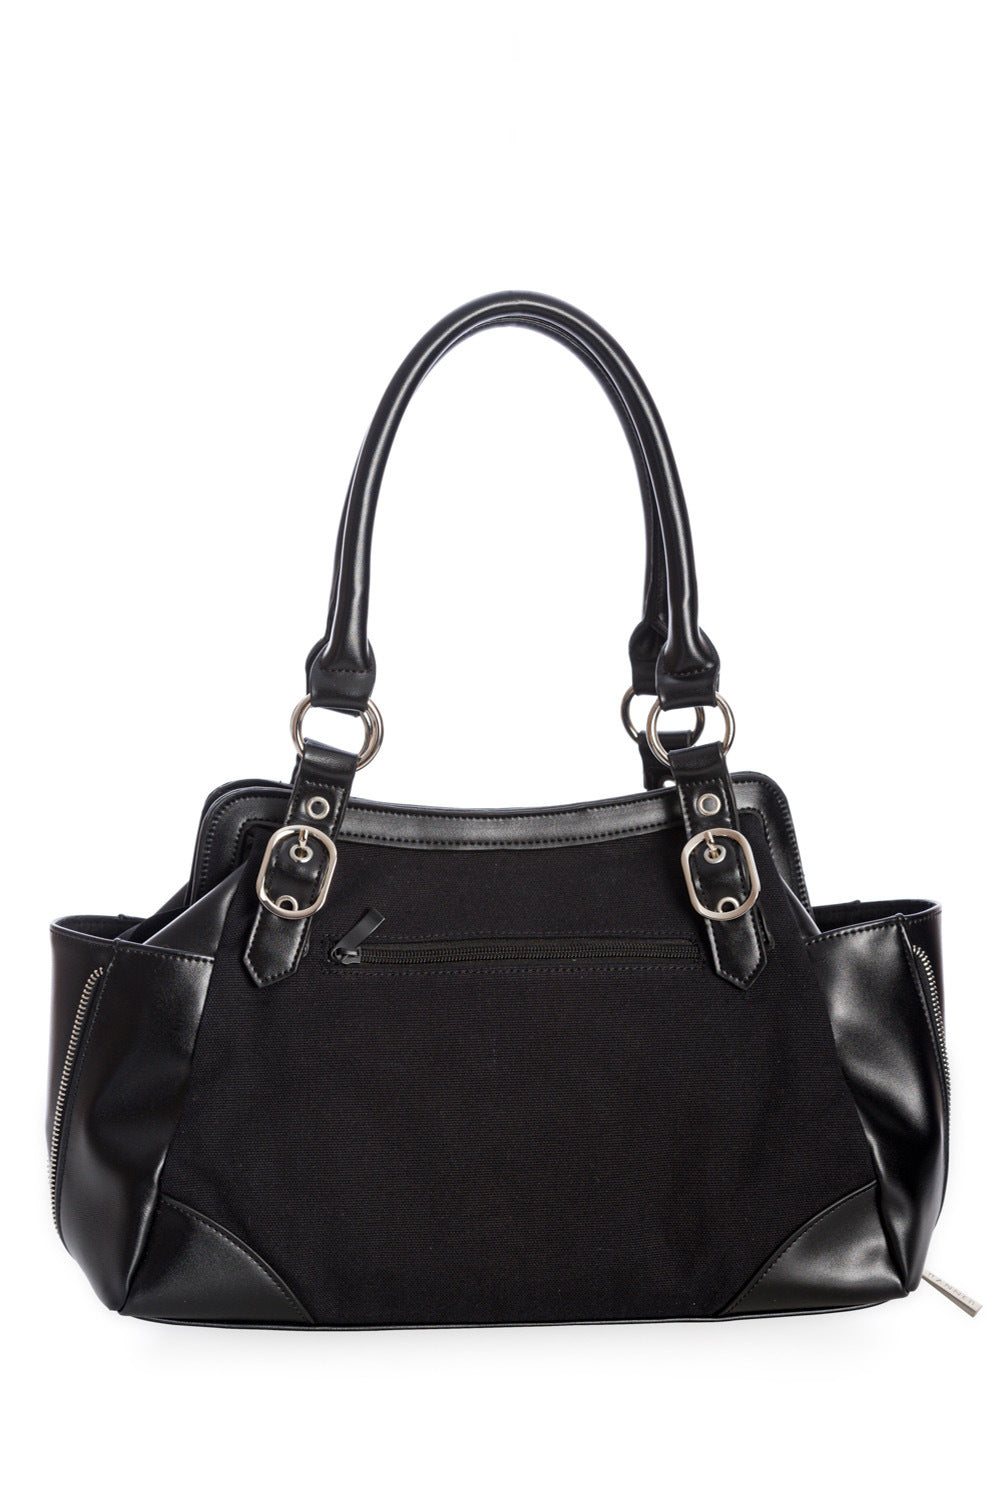 Black shoulder handbag with buckle details on the front centre. 